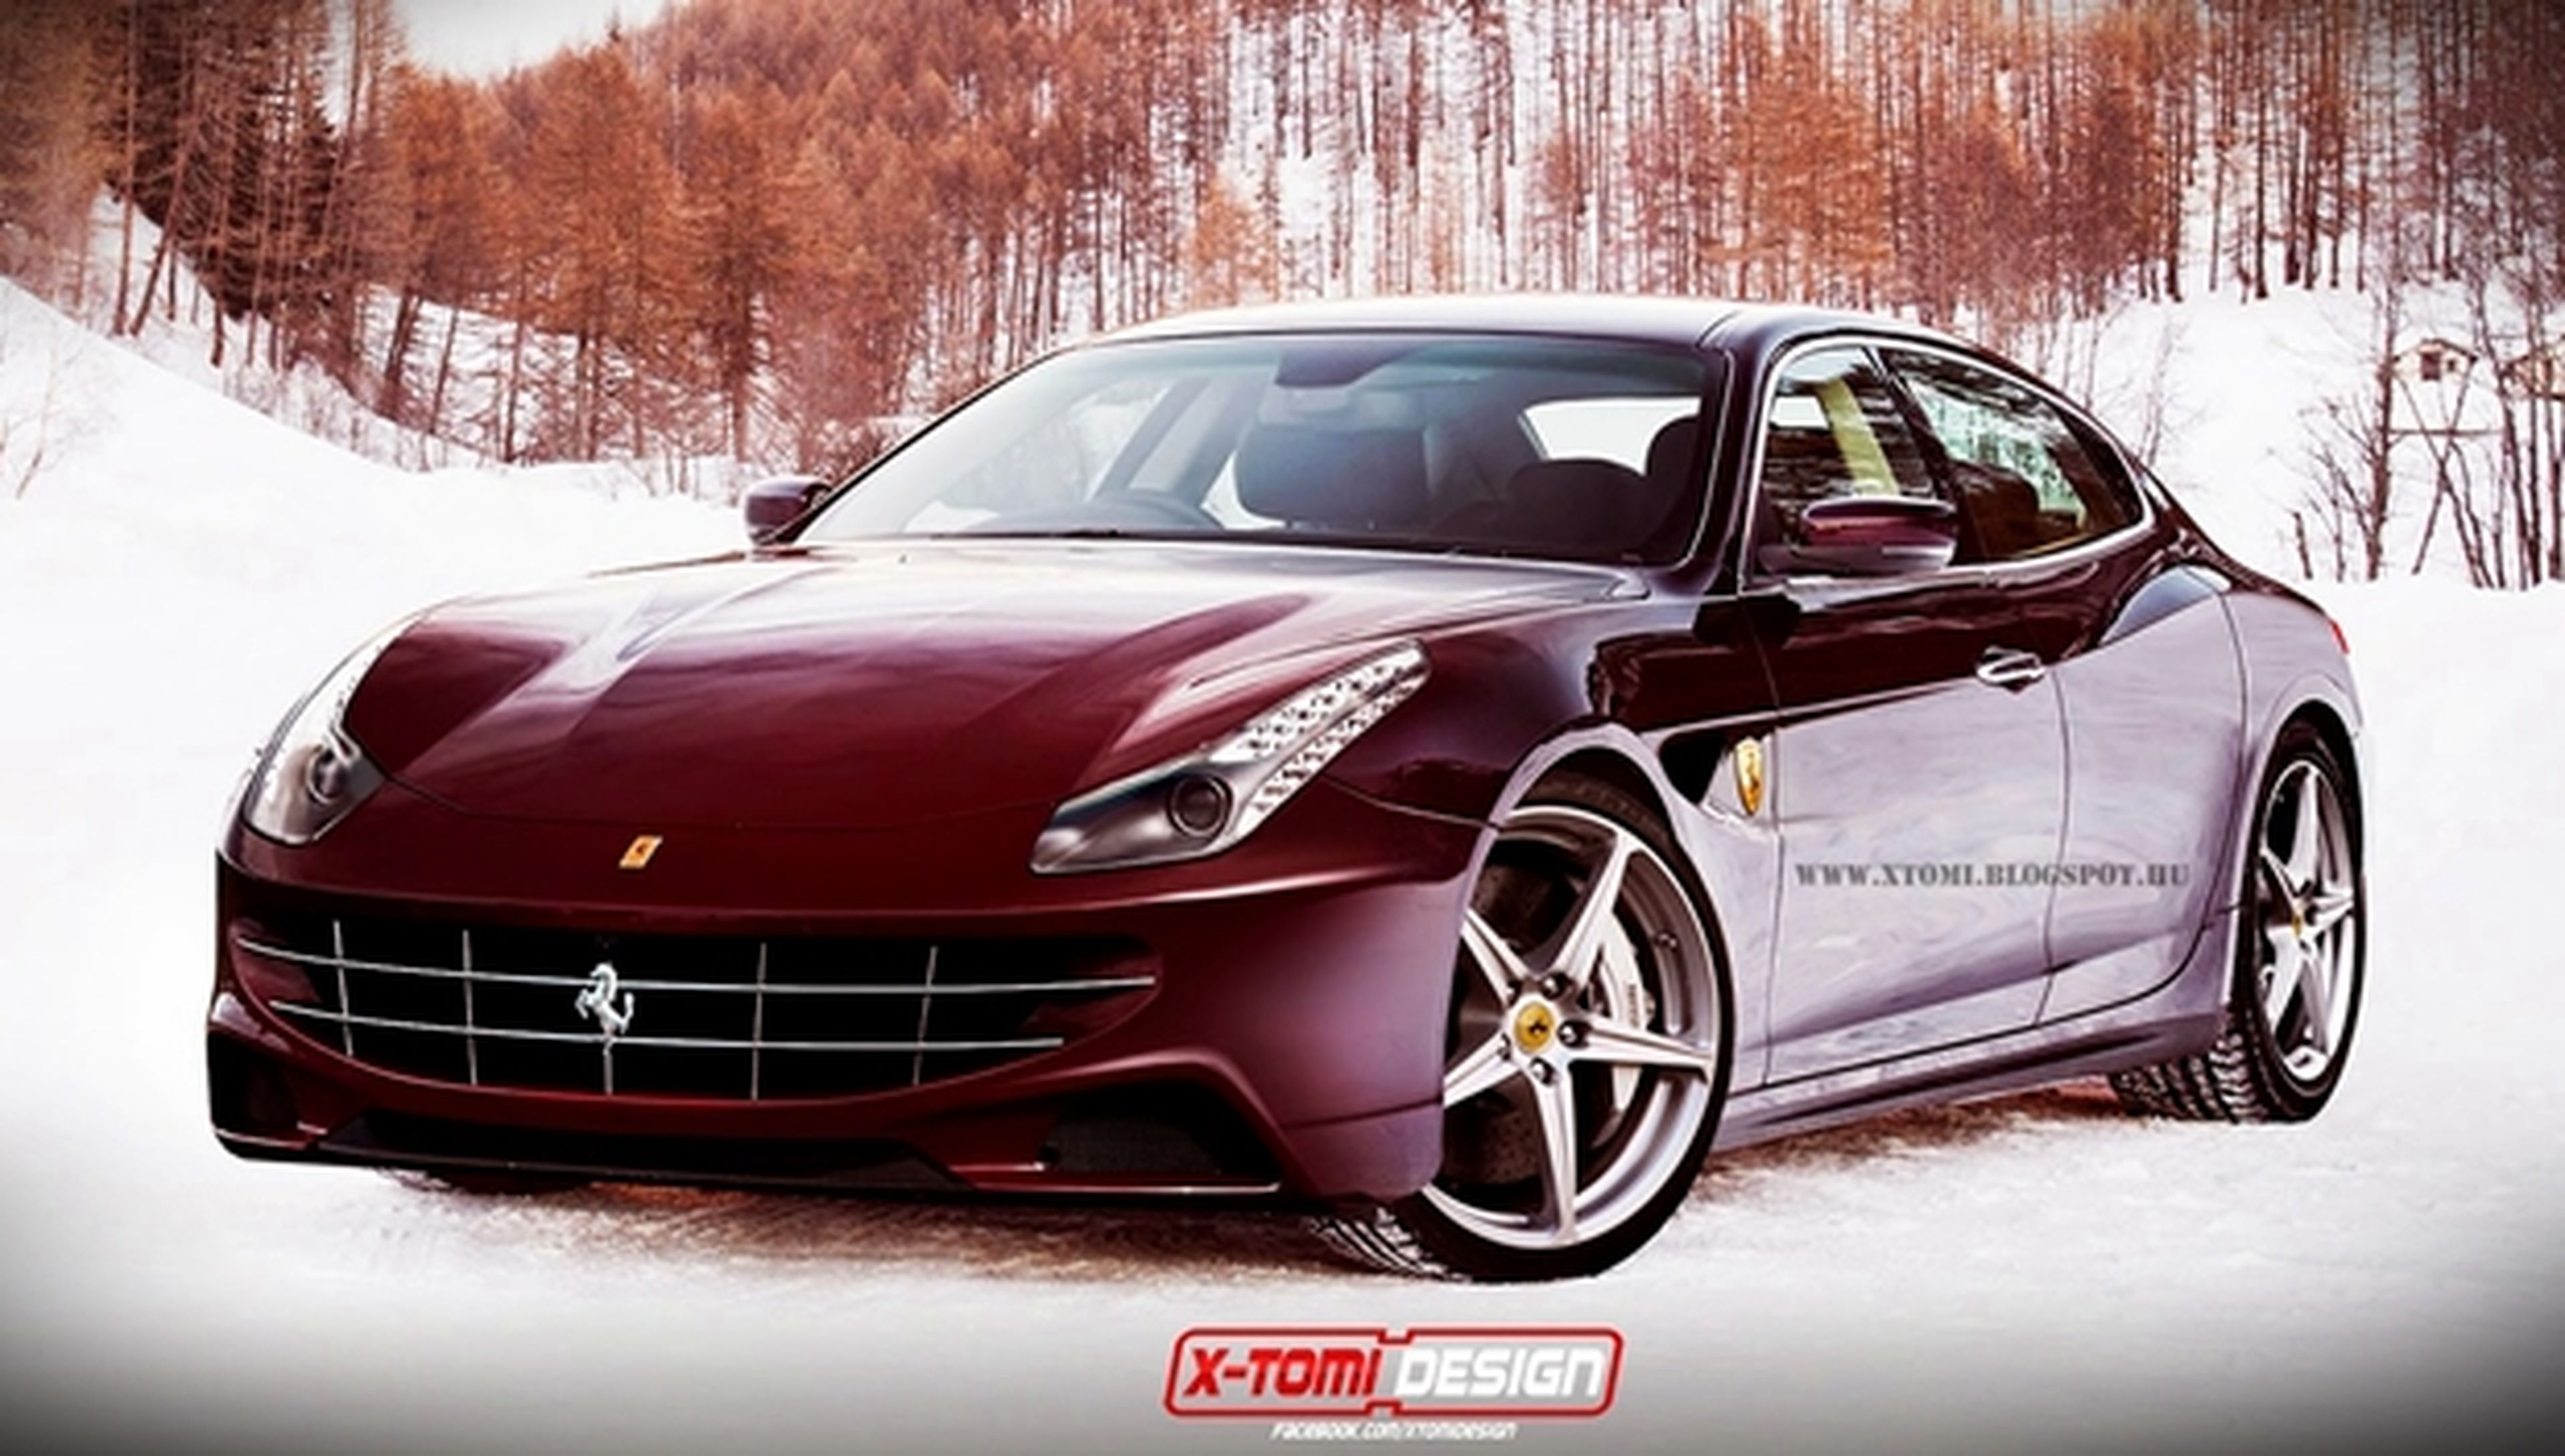 X-Tomi Design recrea el Ferrari Sedán: F44